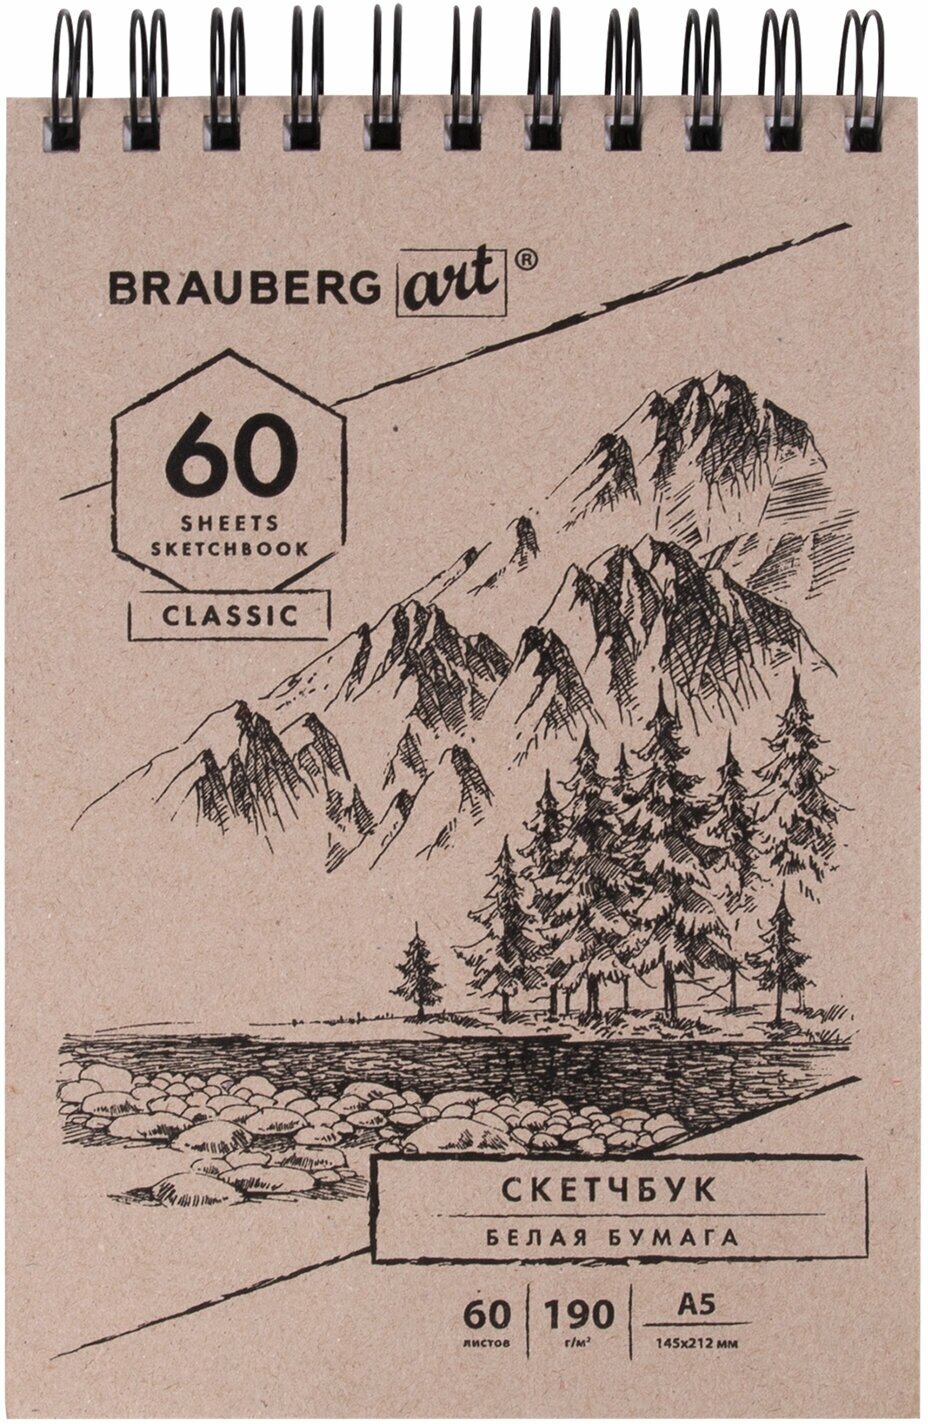 Скетчбук Brauberg белая бумага 190 г/м2, 145х212 мм, 60 листов, твердая обложка, Art Classic 113851